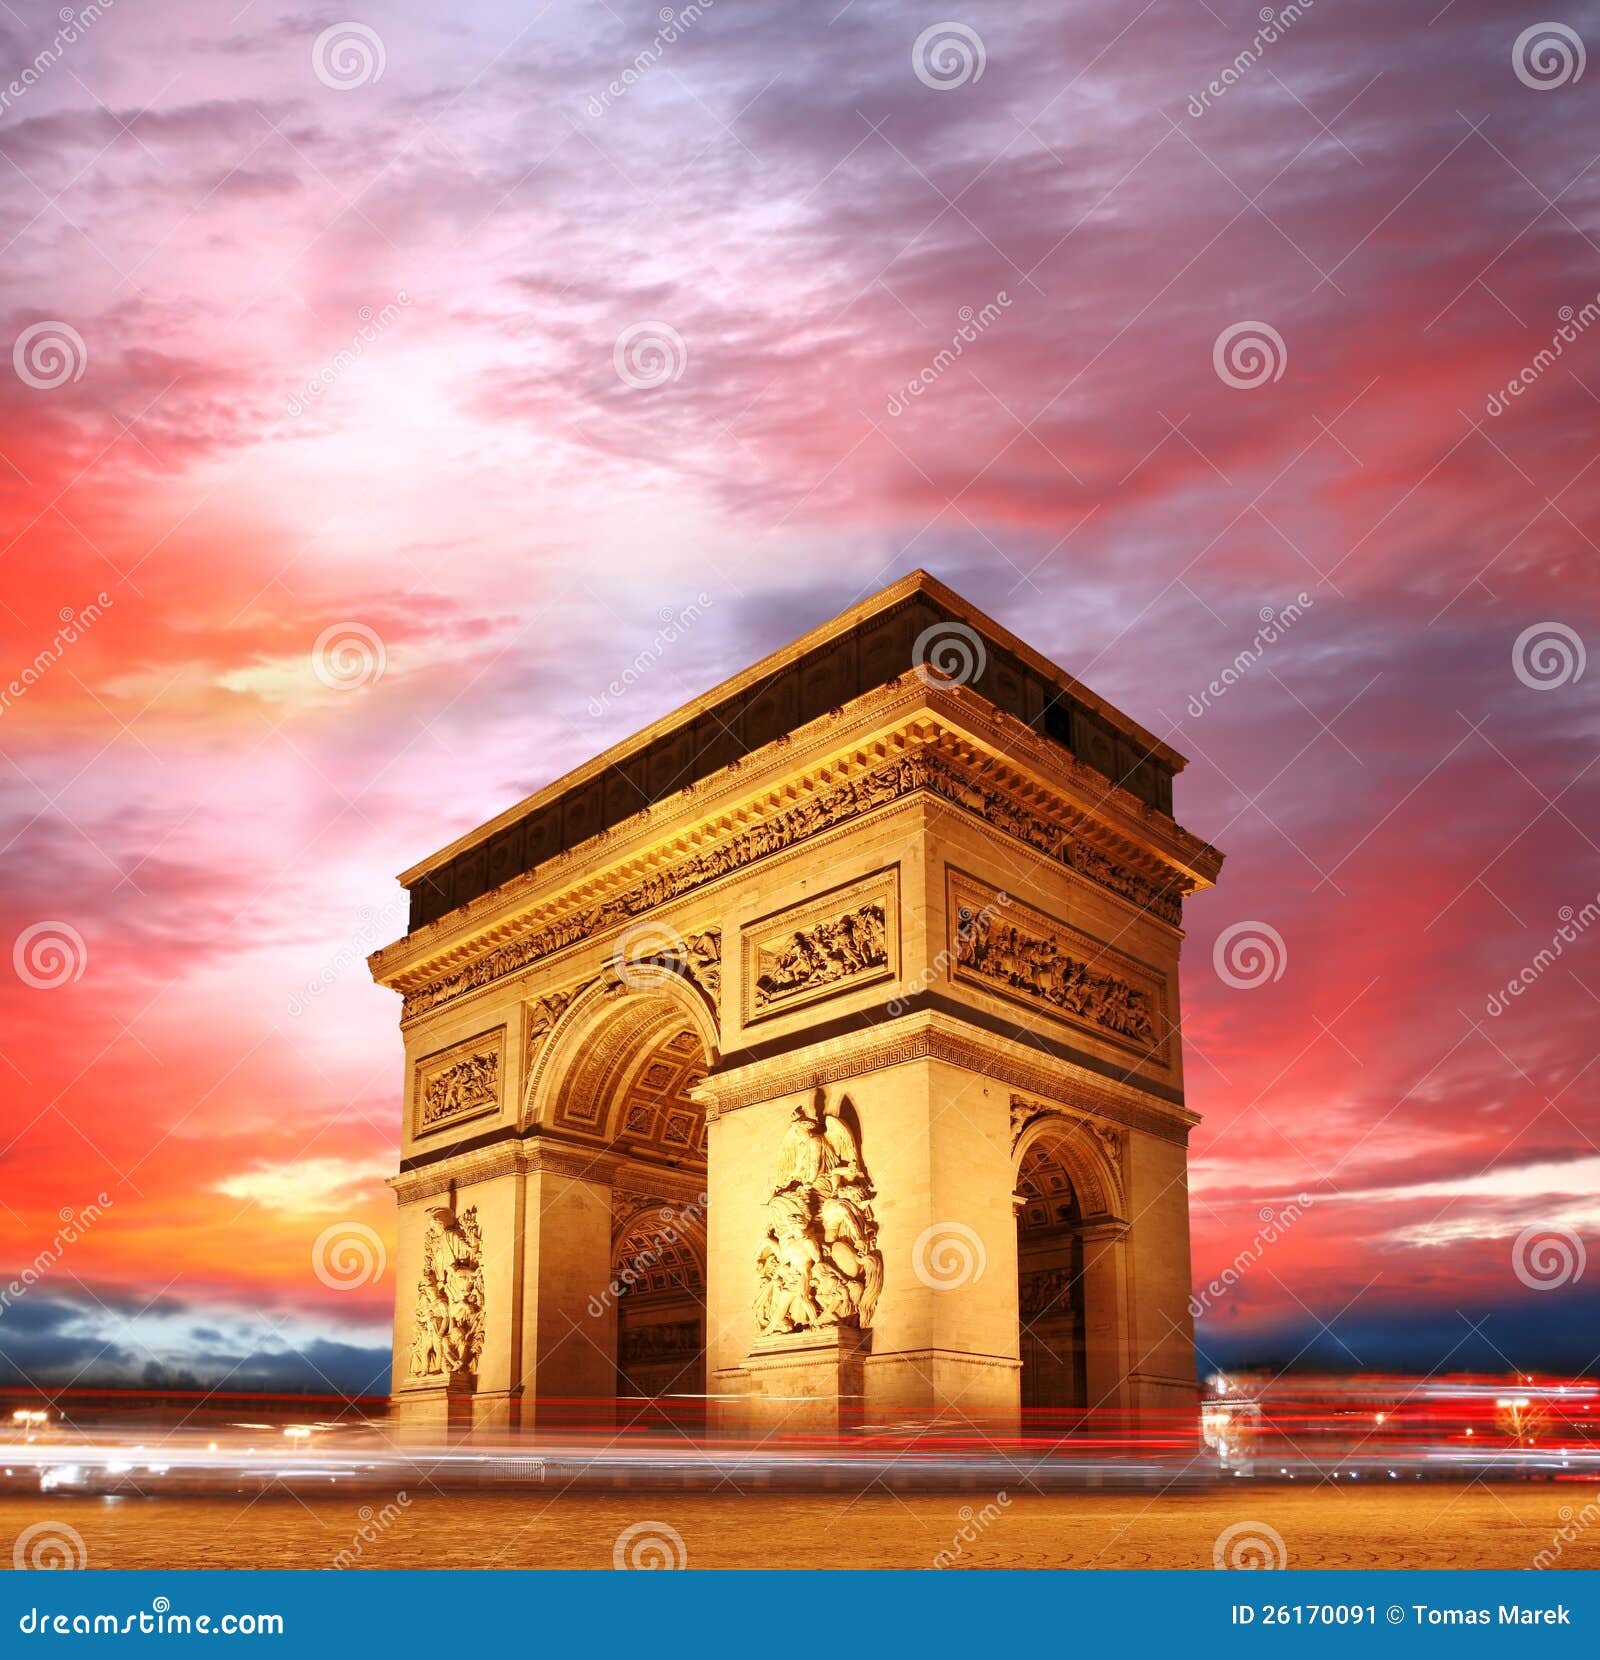 paris, arc de triumph in evening , france